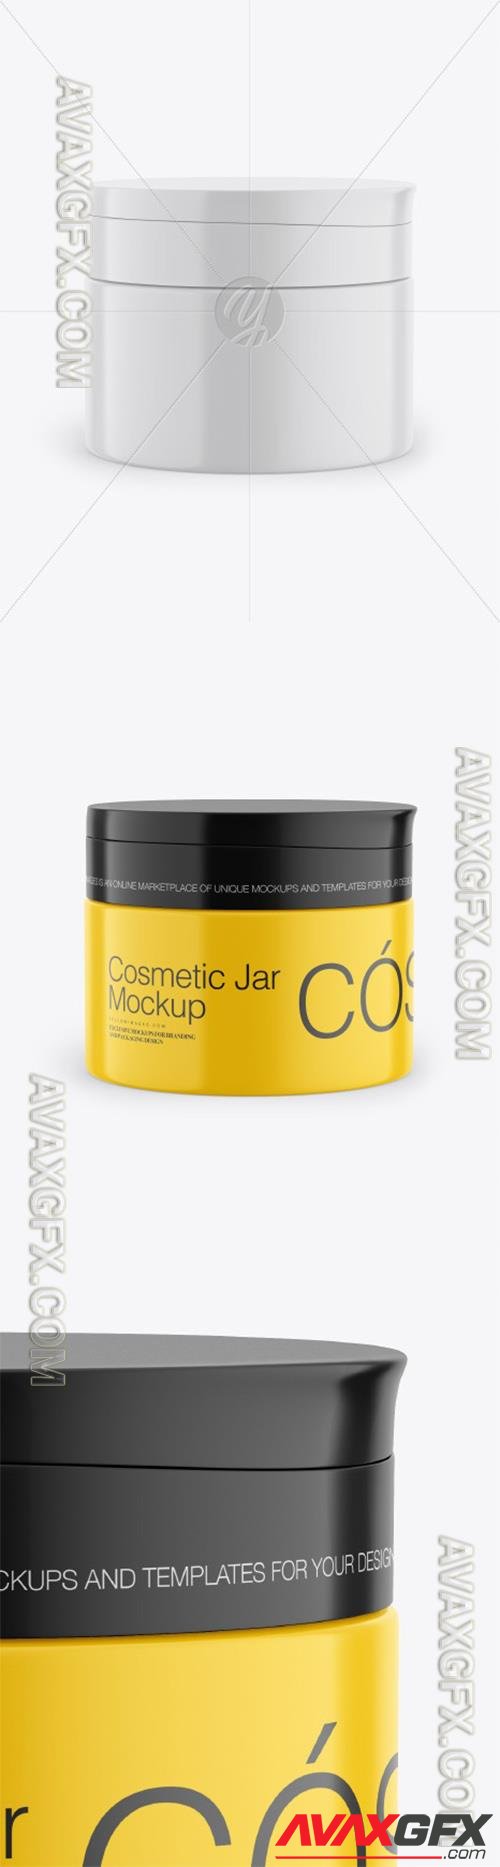 Cosmetic Jar Mockup 50337 TIF